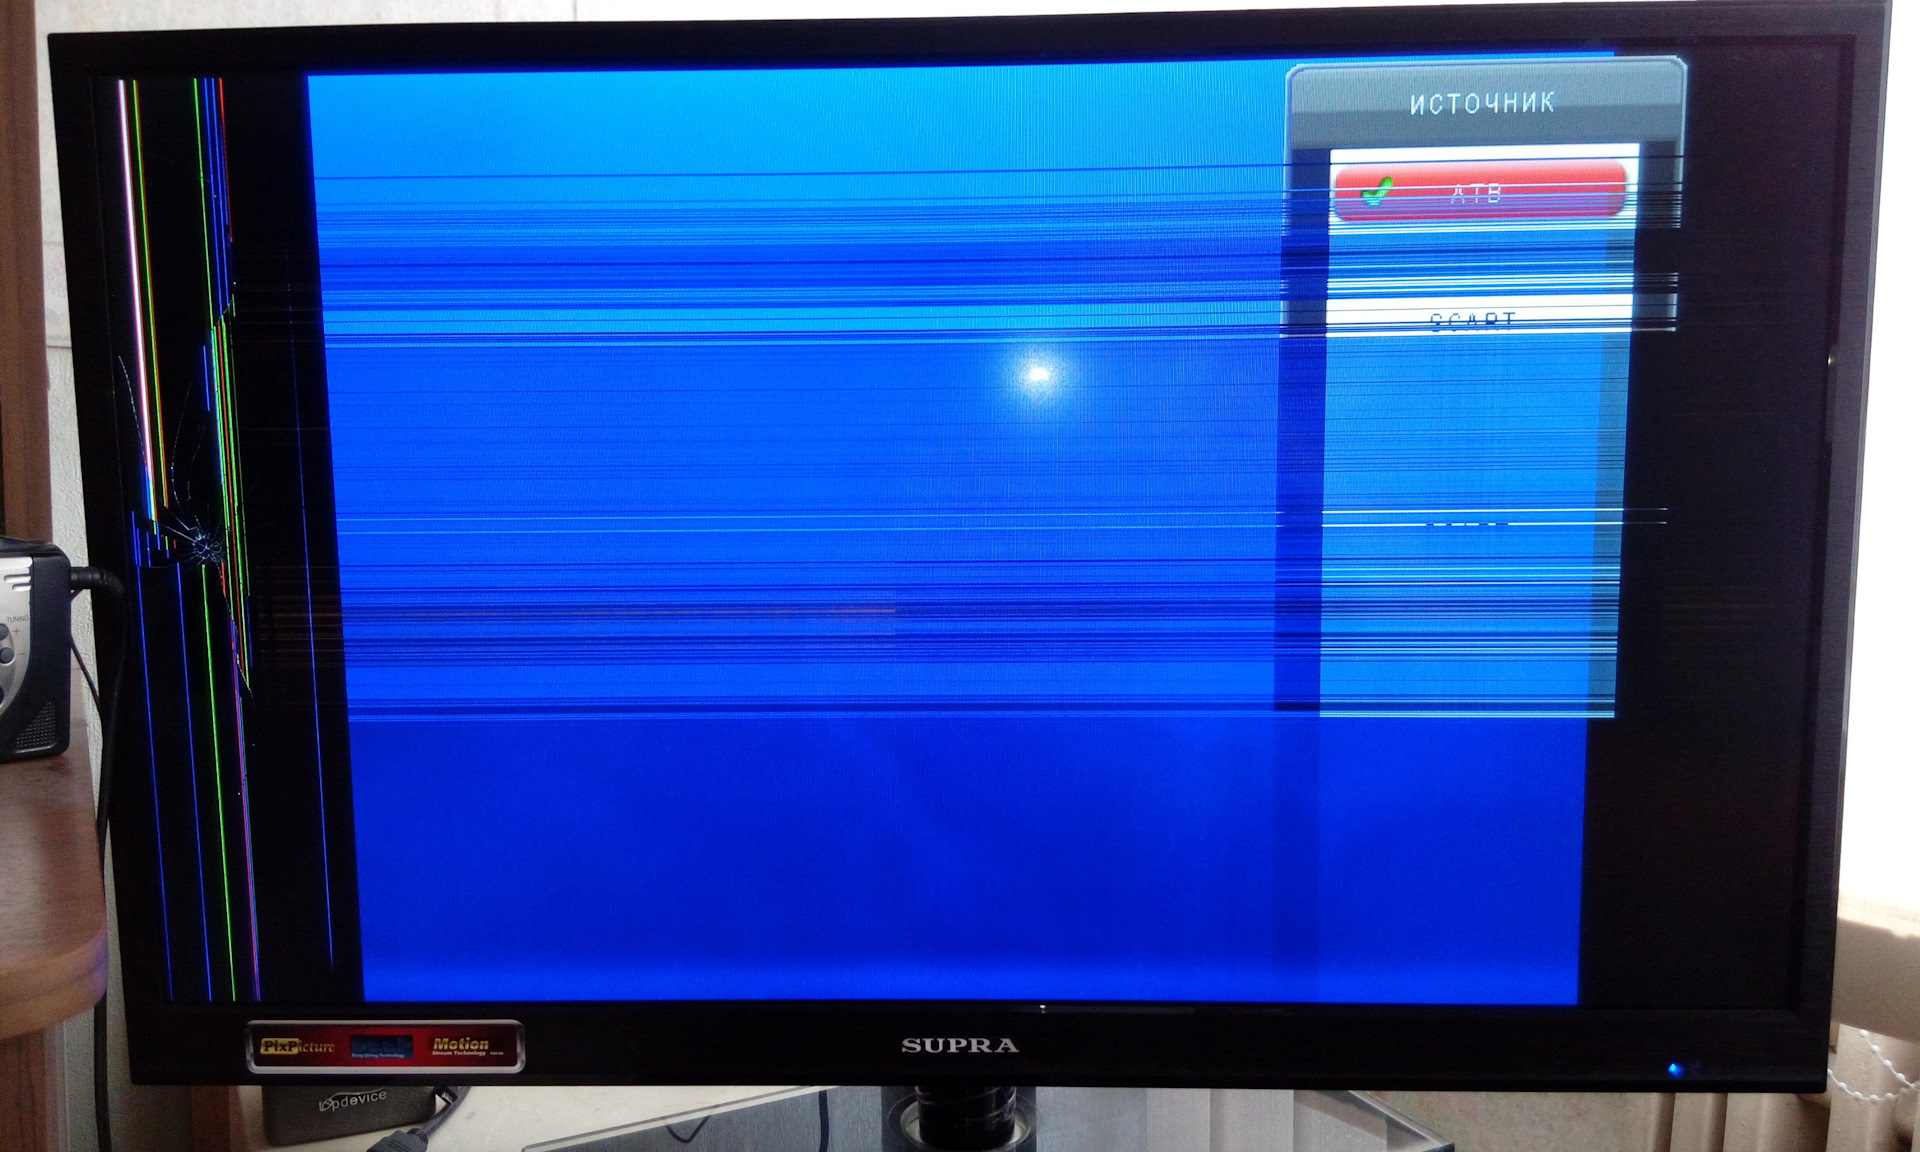 Телевизор есть полосы. Samsung 2243nwx вертикальная полоса. ЖК самсунг вертикальная полоса. Телевизор самсунг красная полоса снизу. LG плазма горизонтальная полоса.